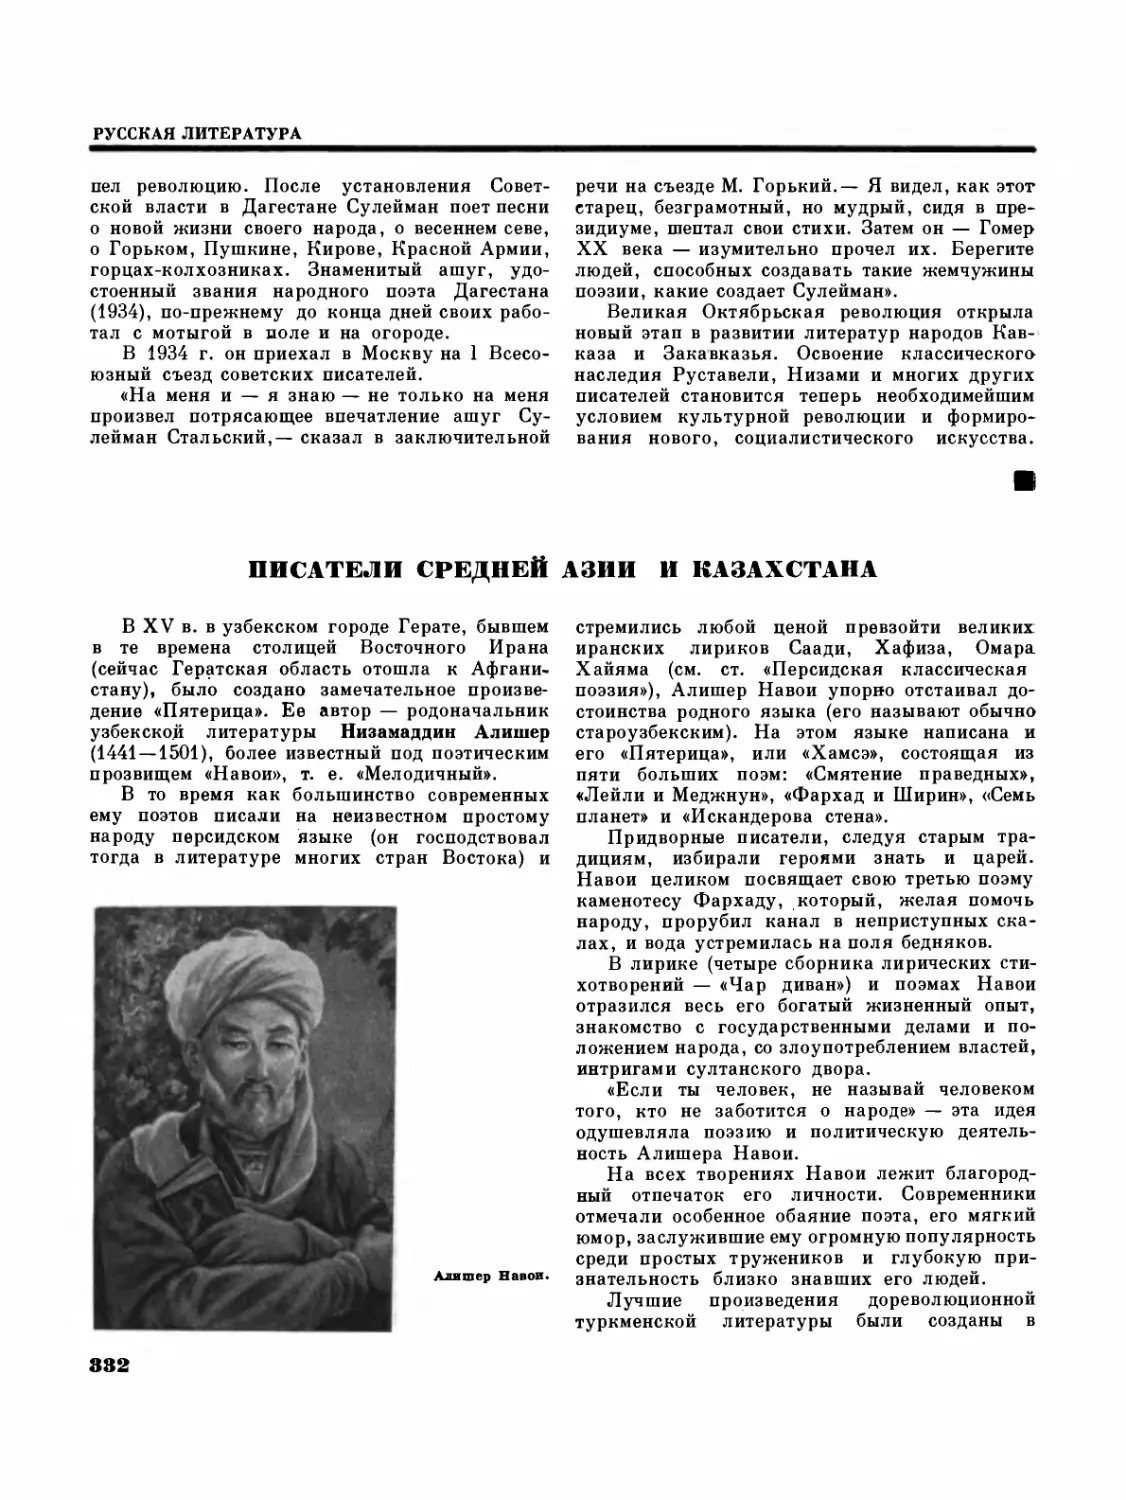 Писатели Средней Азии и Казахстана — Г. П. Трефилова